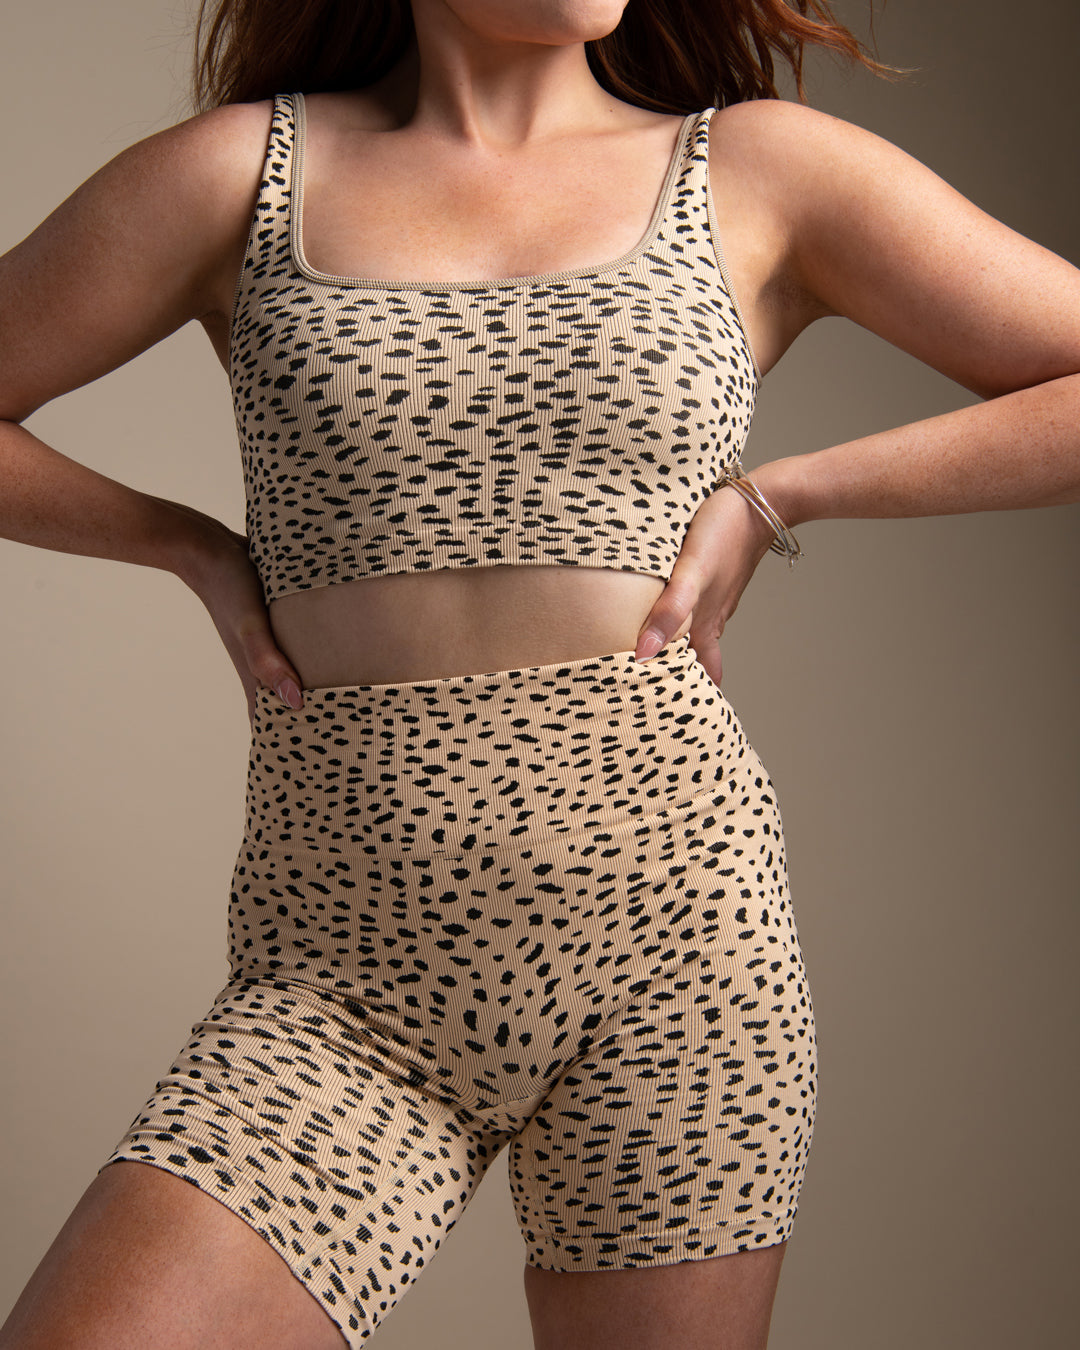 KADYLUXE® womens seamless cheetah biker short and matching cami.